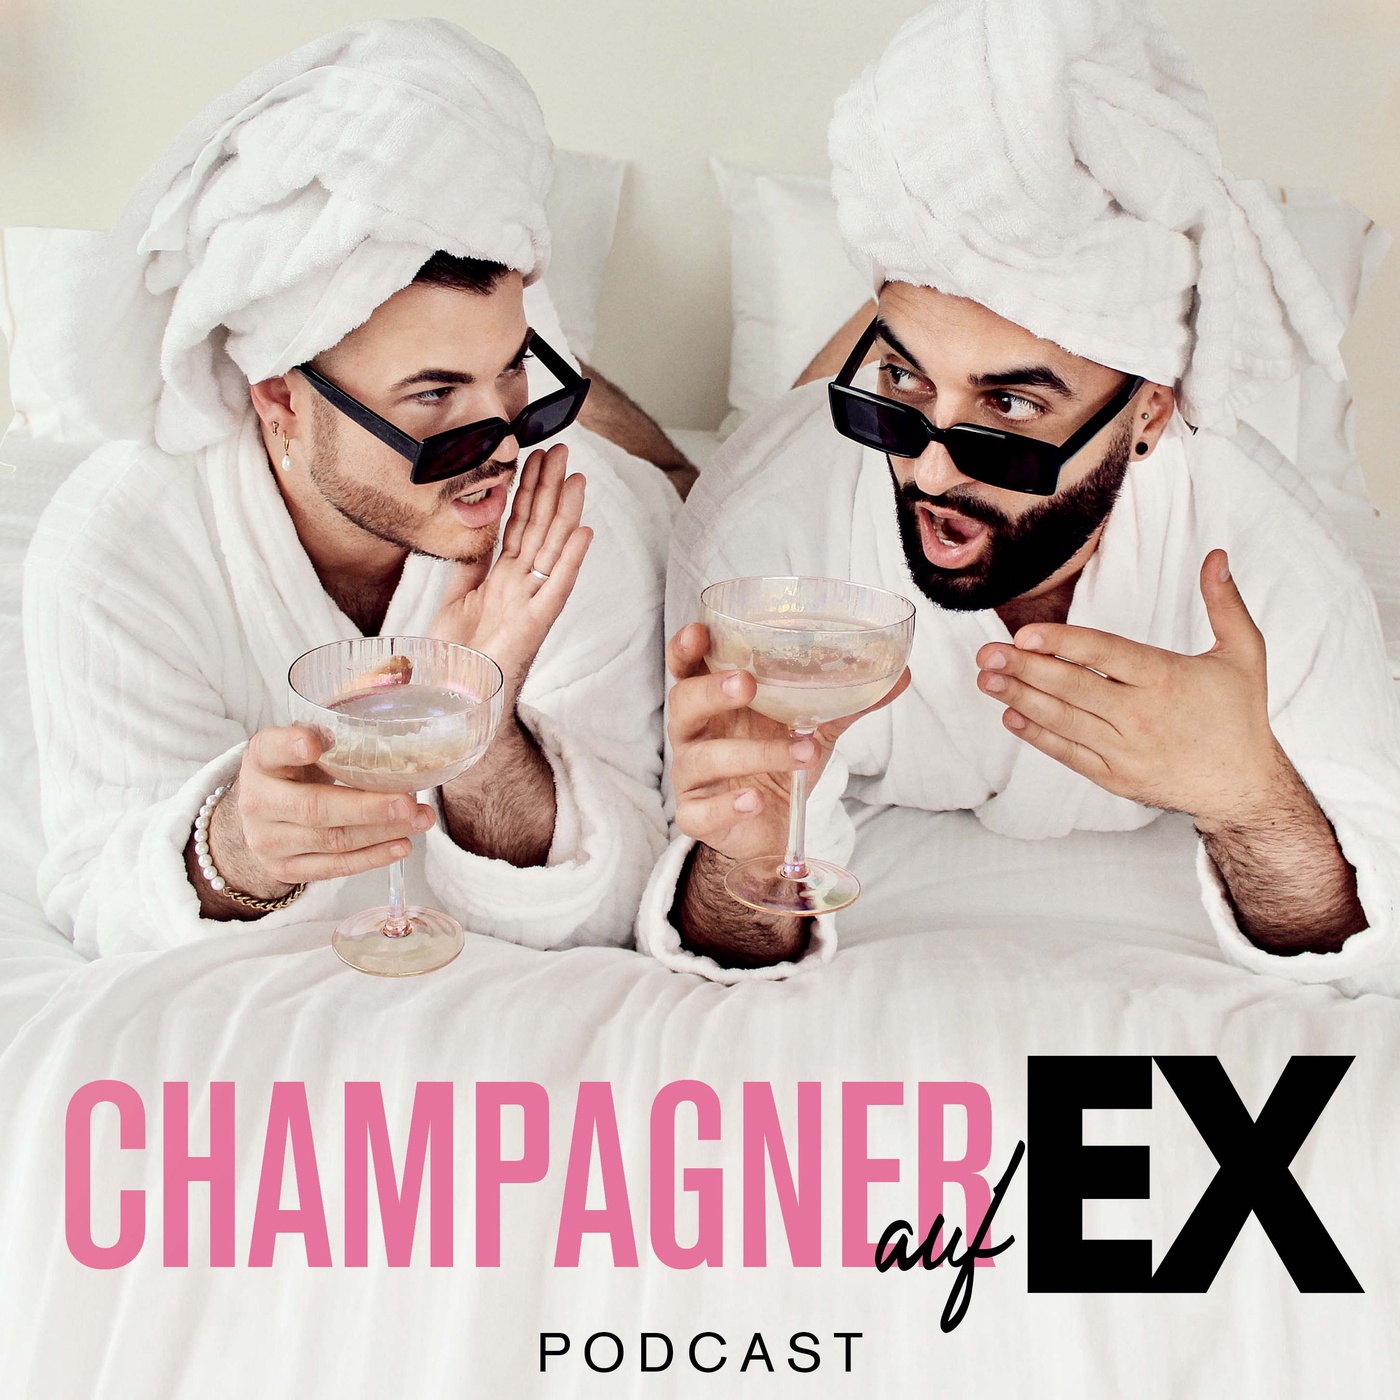 Champagner auf Ex Trailer